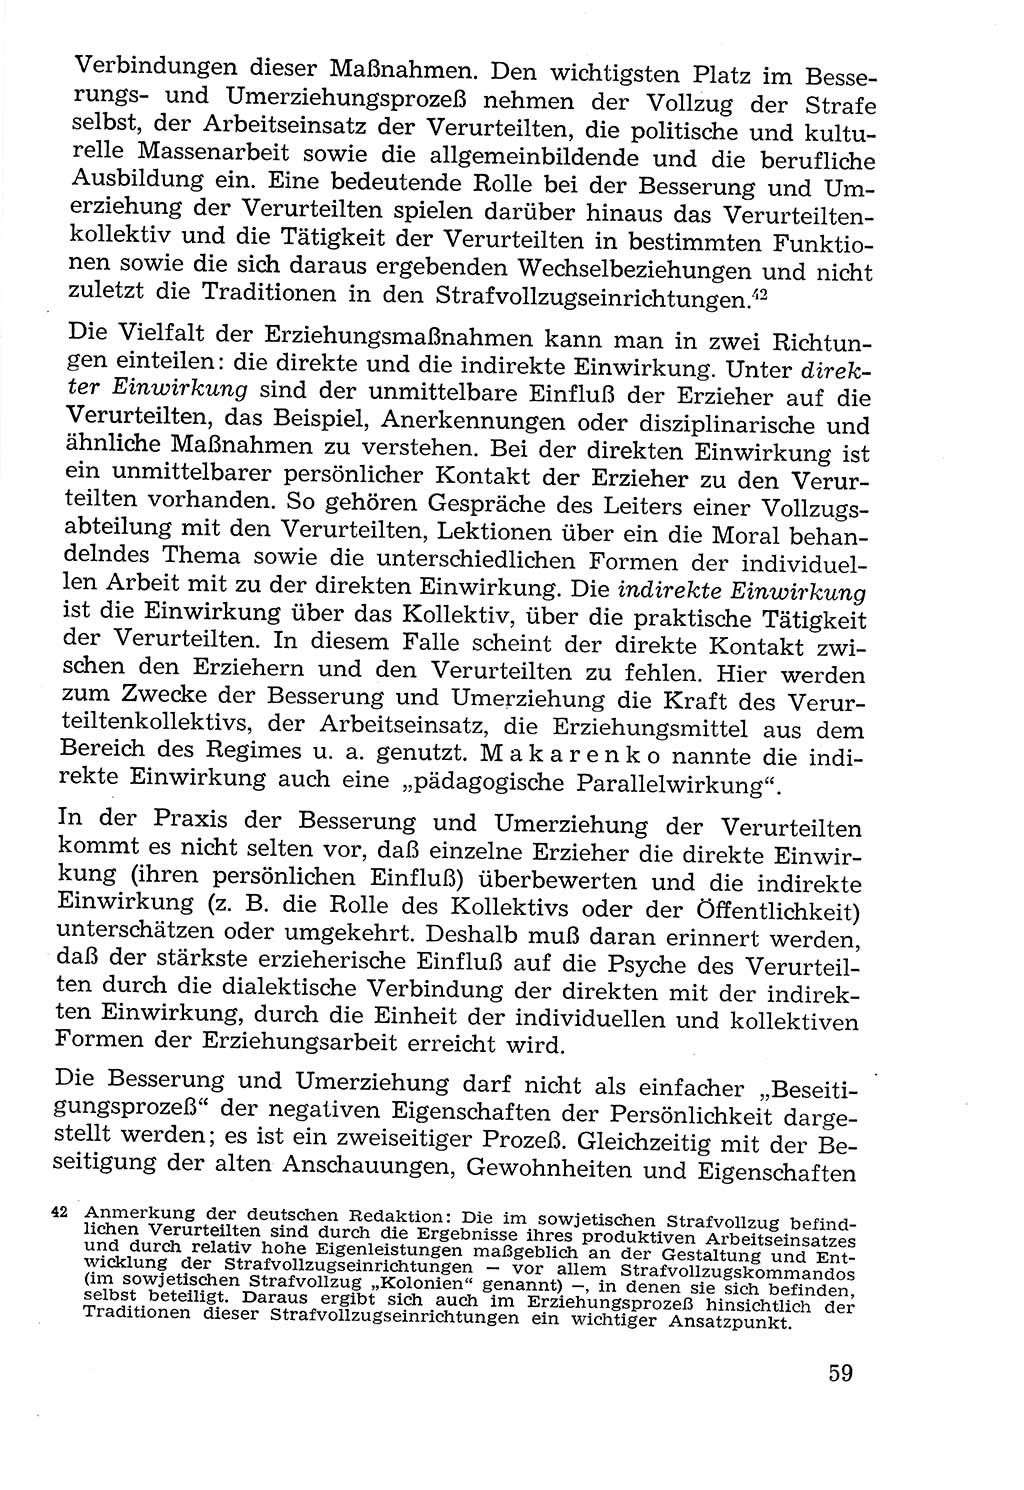 Lehrbuch der Strafvollzugspädagogik [Deutsche Demokratische Republik (DDR)] 1969, Seite 59 (Lb. SV-Pd. DDR 1969, S. 59)